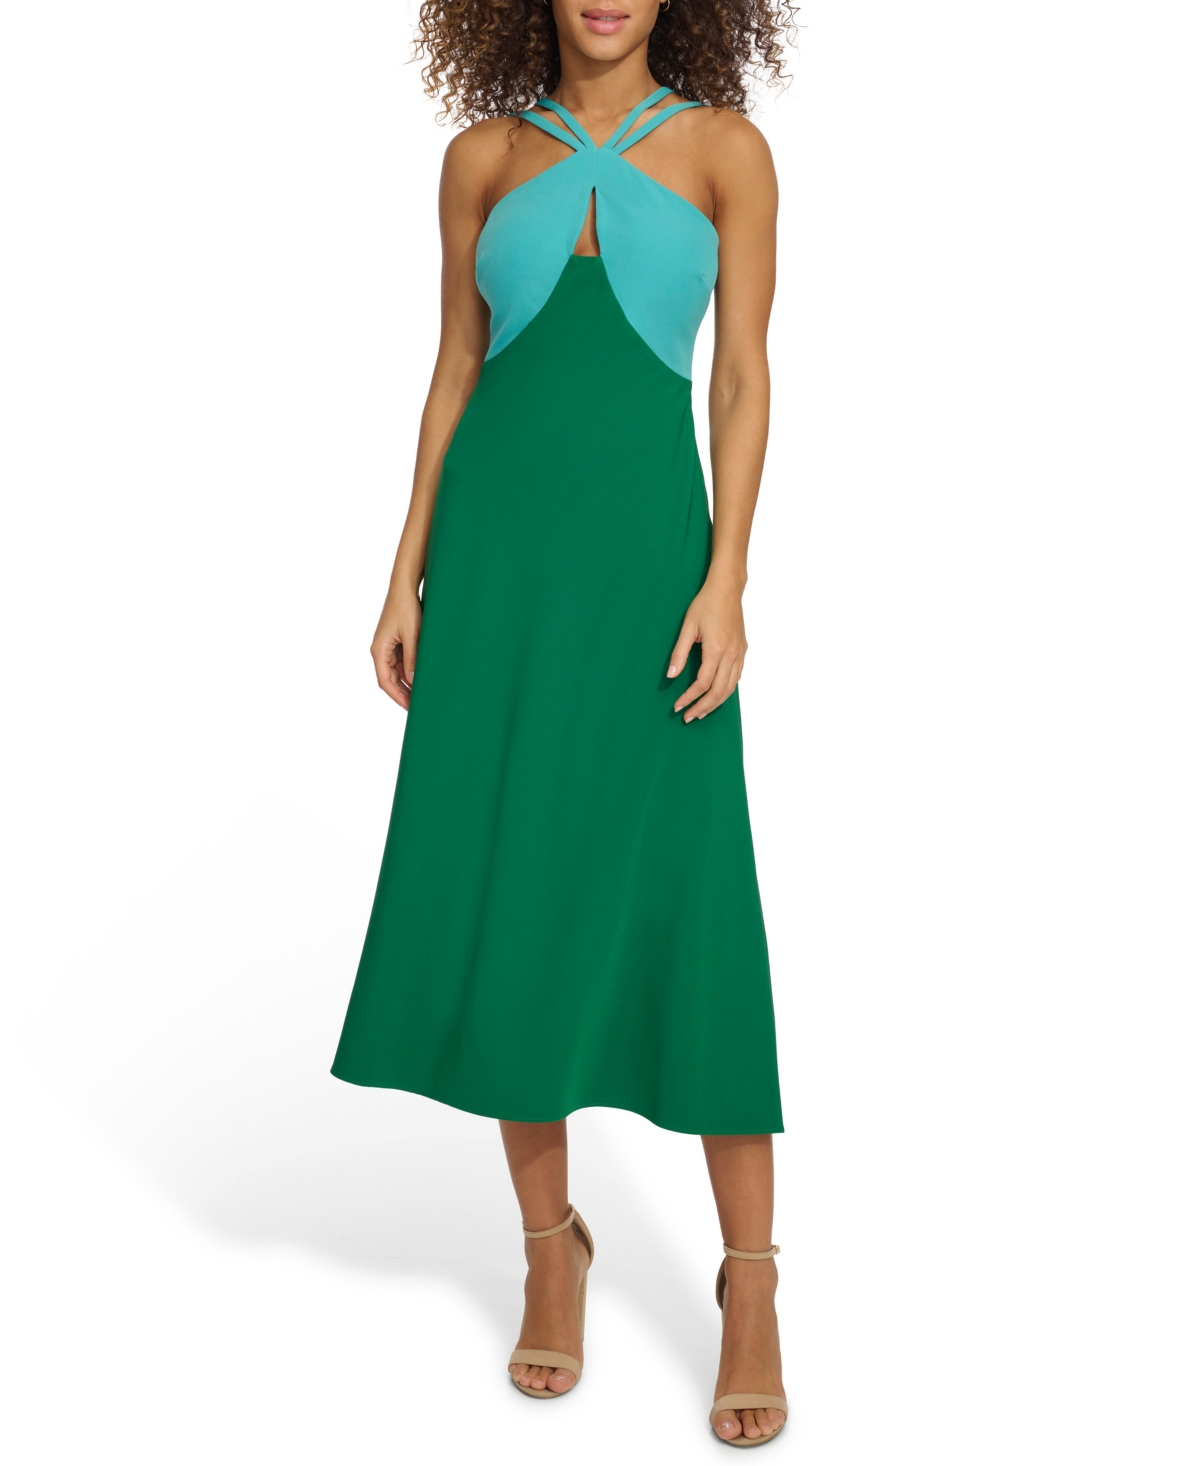 Women's Strappy Colorblocked A-Line Midi Dress - Aqua Green